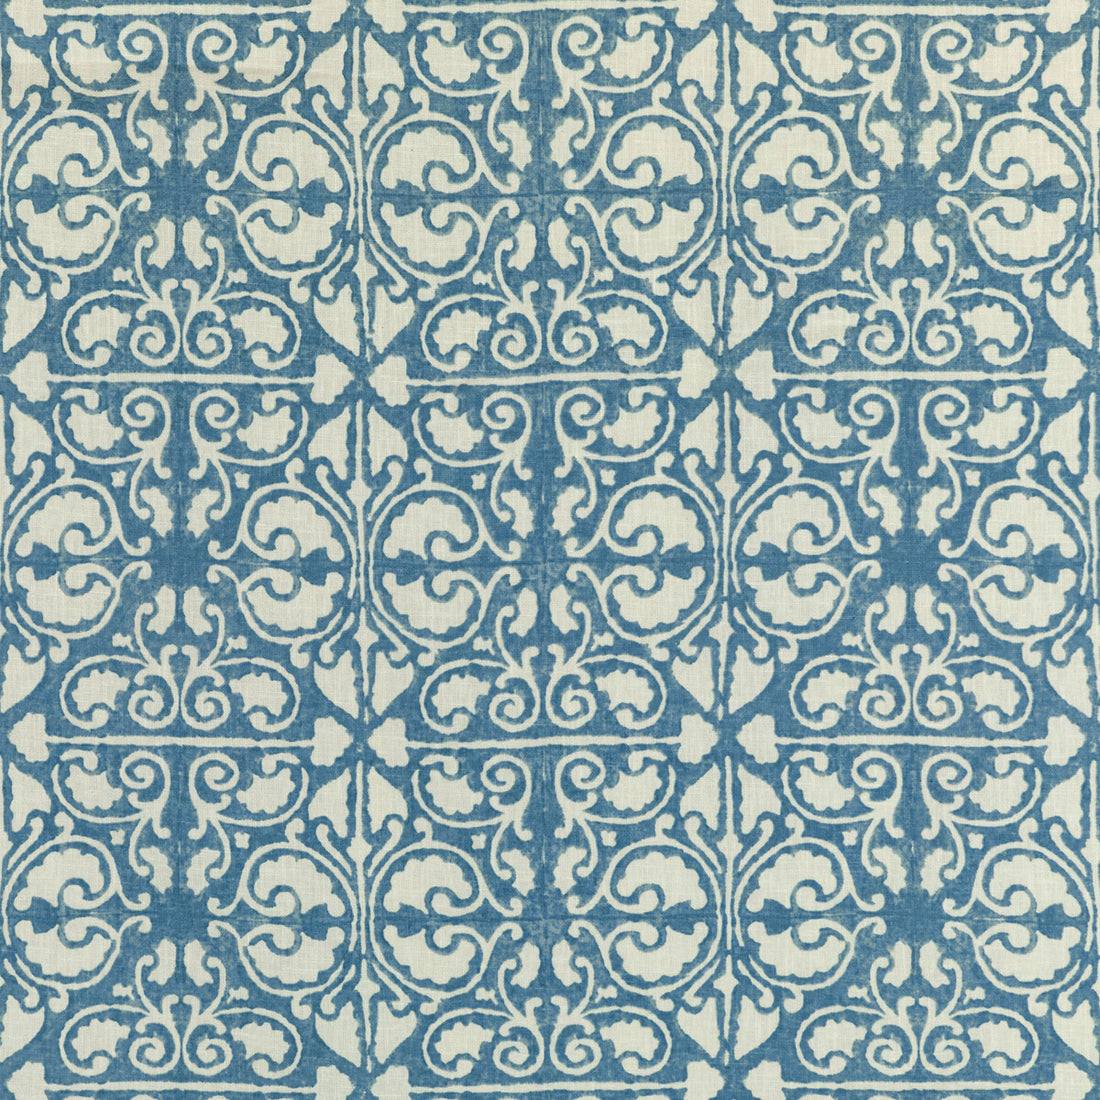 Kravet Basics fabric in agra tile-5 color - pattern AGRA TILE.5.0 - by Kravet Basics in the L&